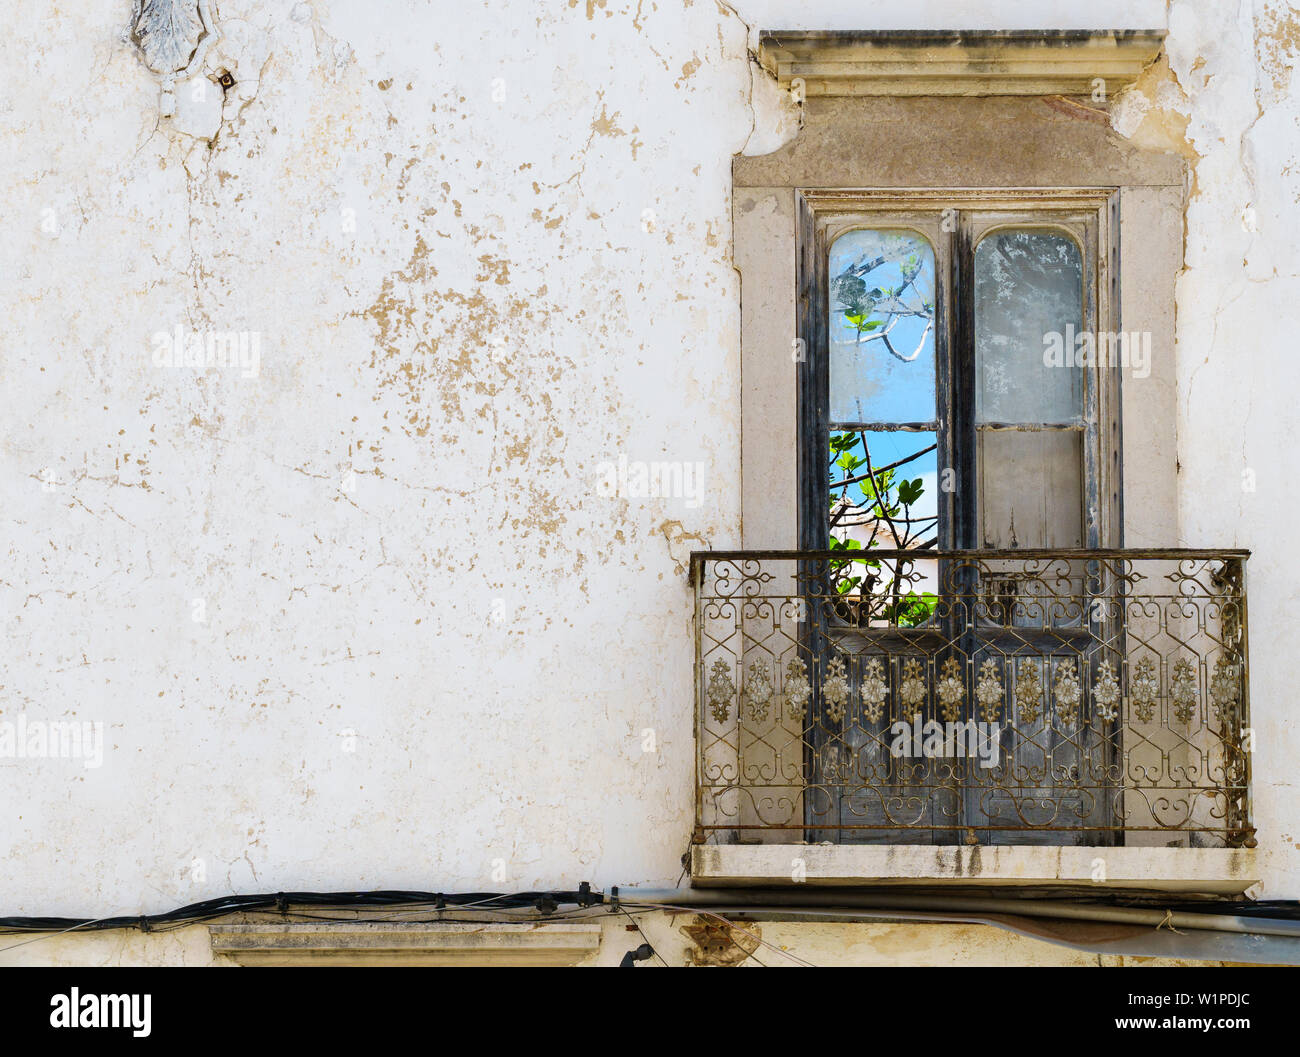 Der Blick durch die französischen Fenster in einem trostlosen verwitterten Hausfassade in Portugal zeigt die lebendige Schönheit der Natur (Frontal, Querformat Stockfoto